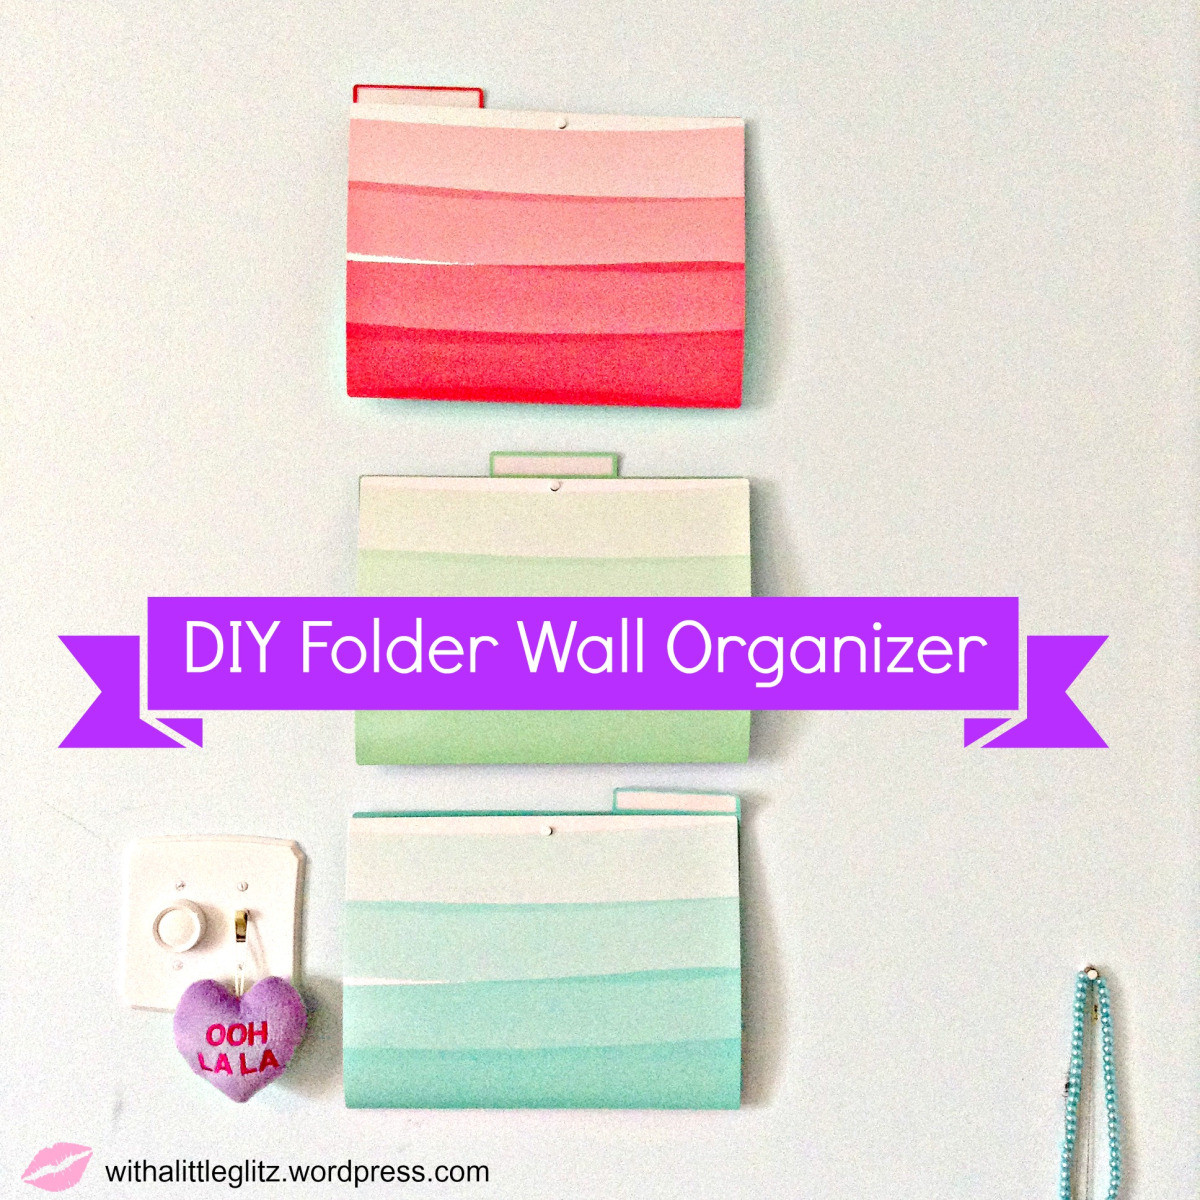 DIY Folder Organizer
 Weekend DIY Super Easy Folder Wall Organizer